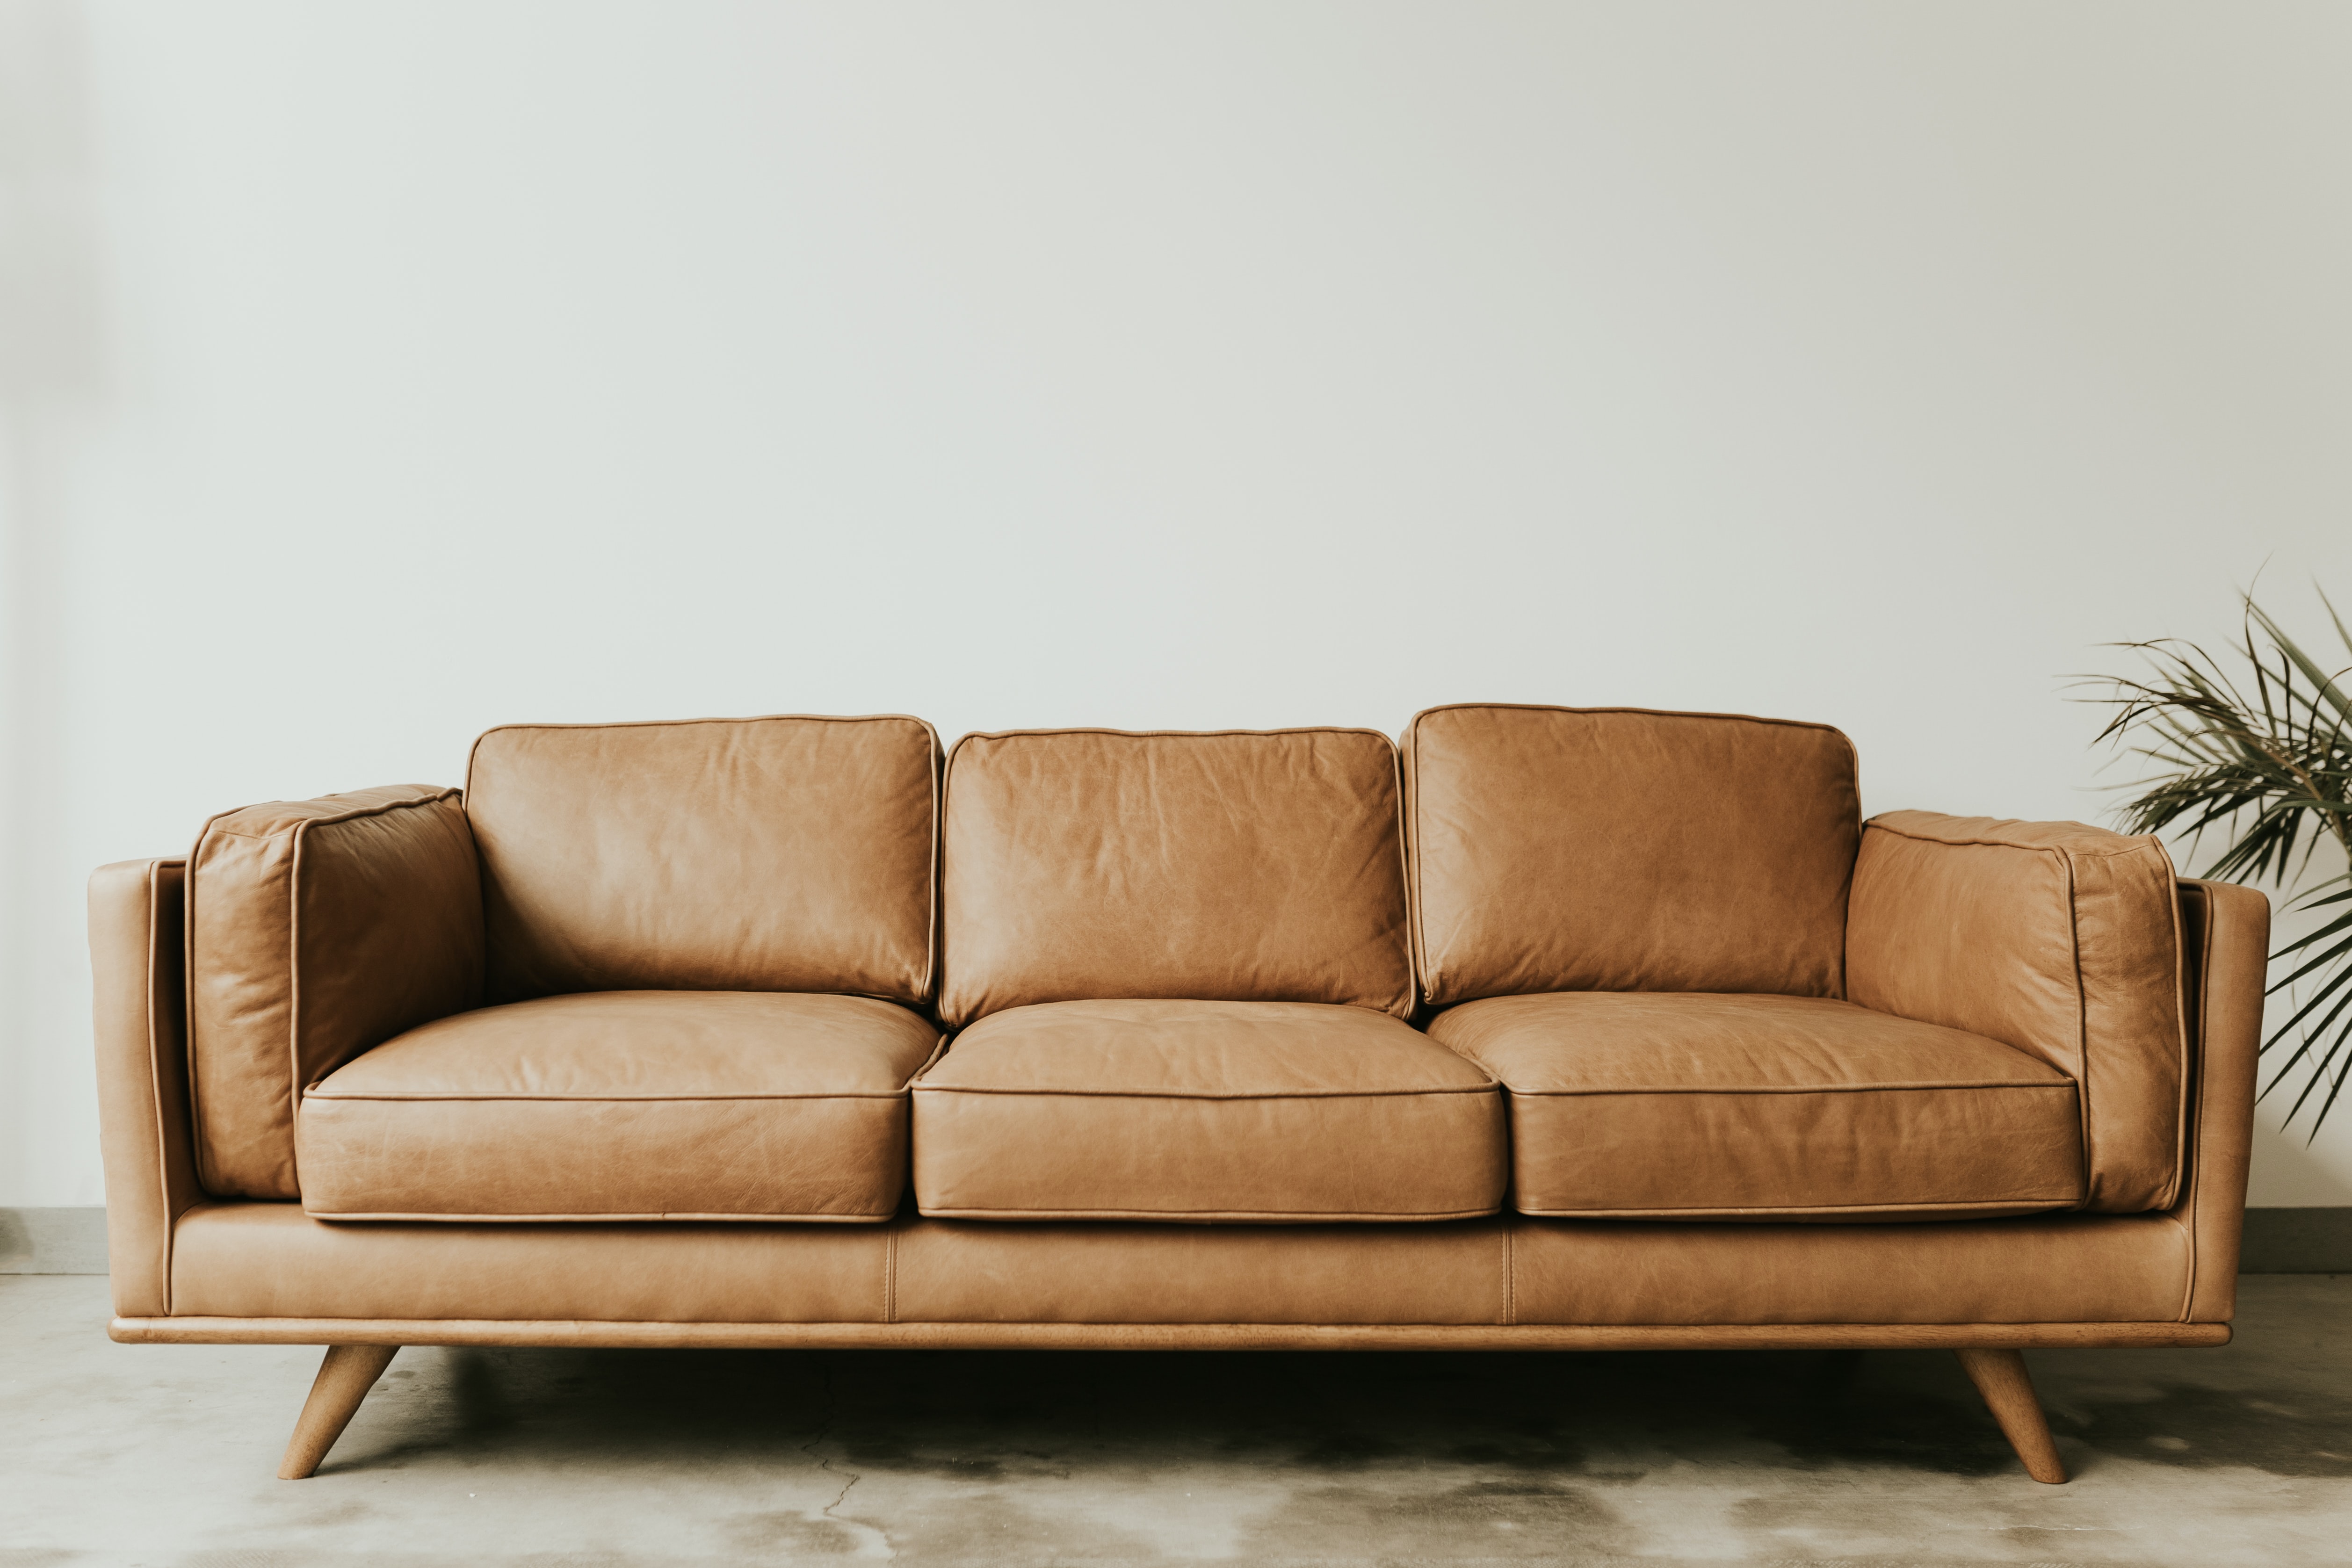 Pohovka je známá také pod názvem gauč, otoman, sofa nebo kanape a slouží nejen k sezení, ale také k ležení